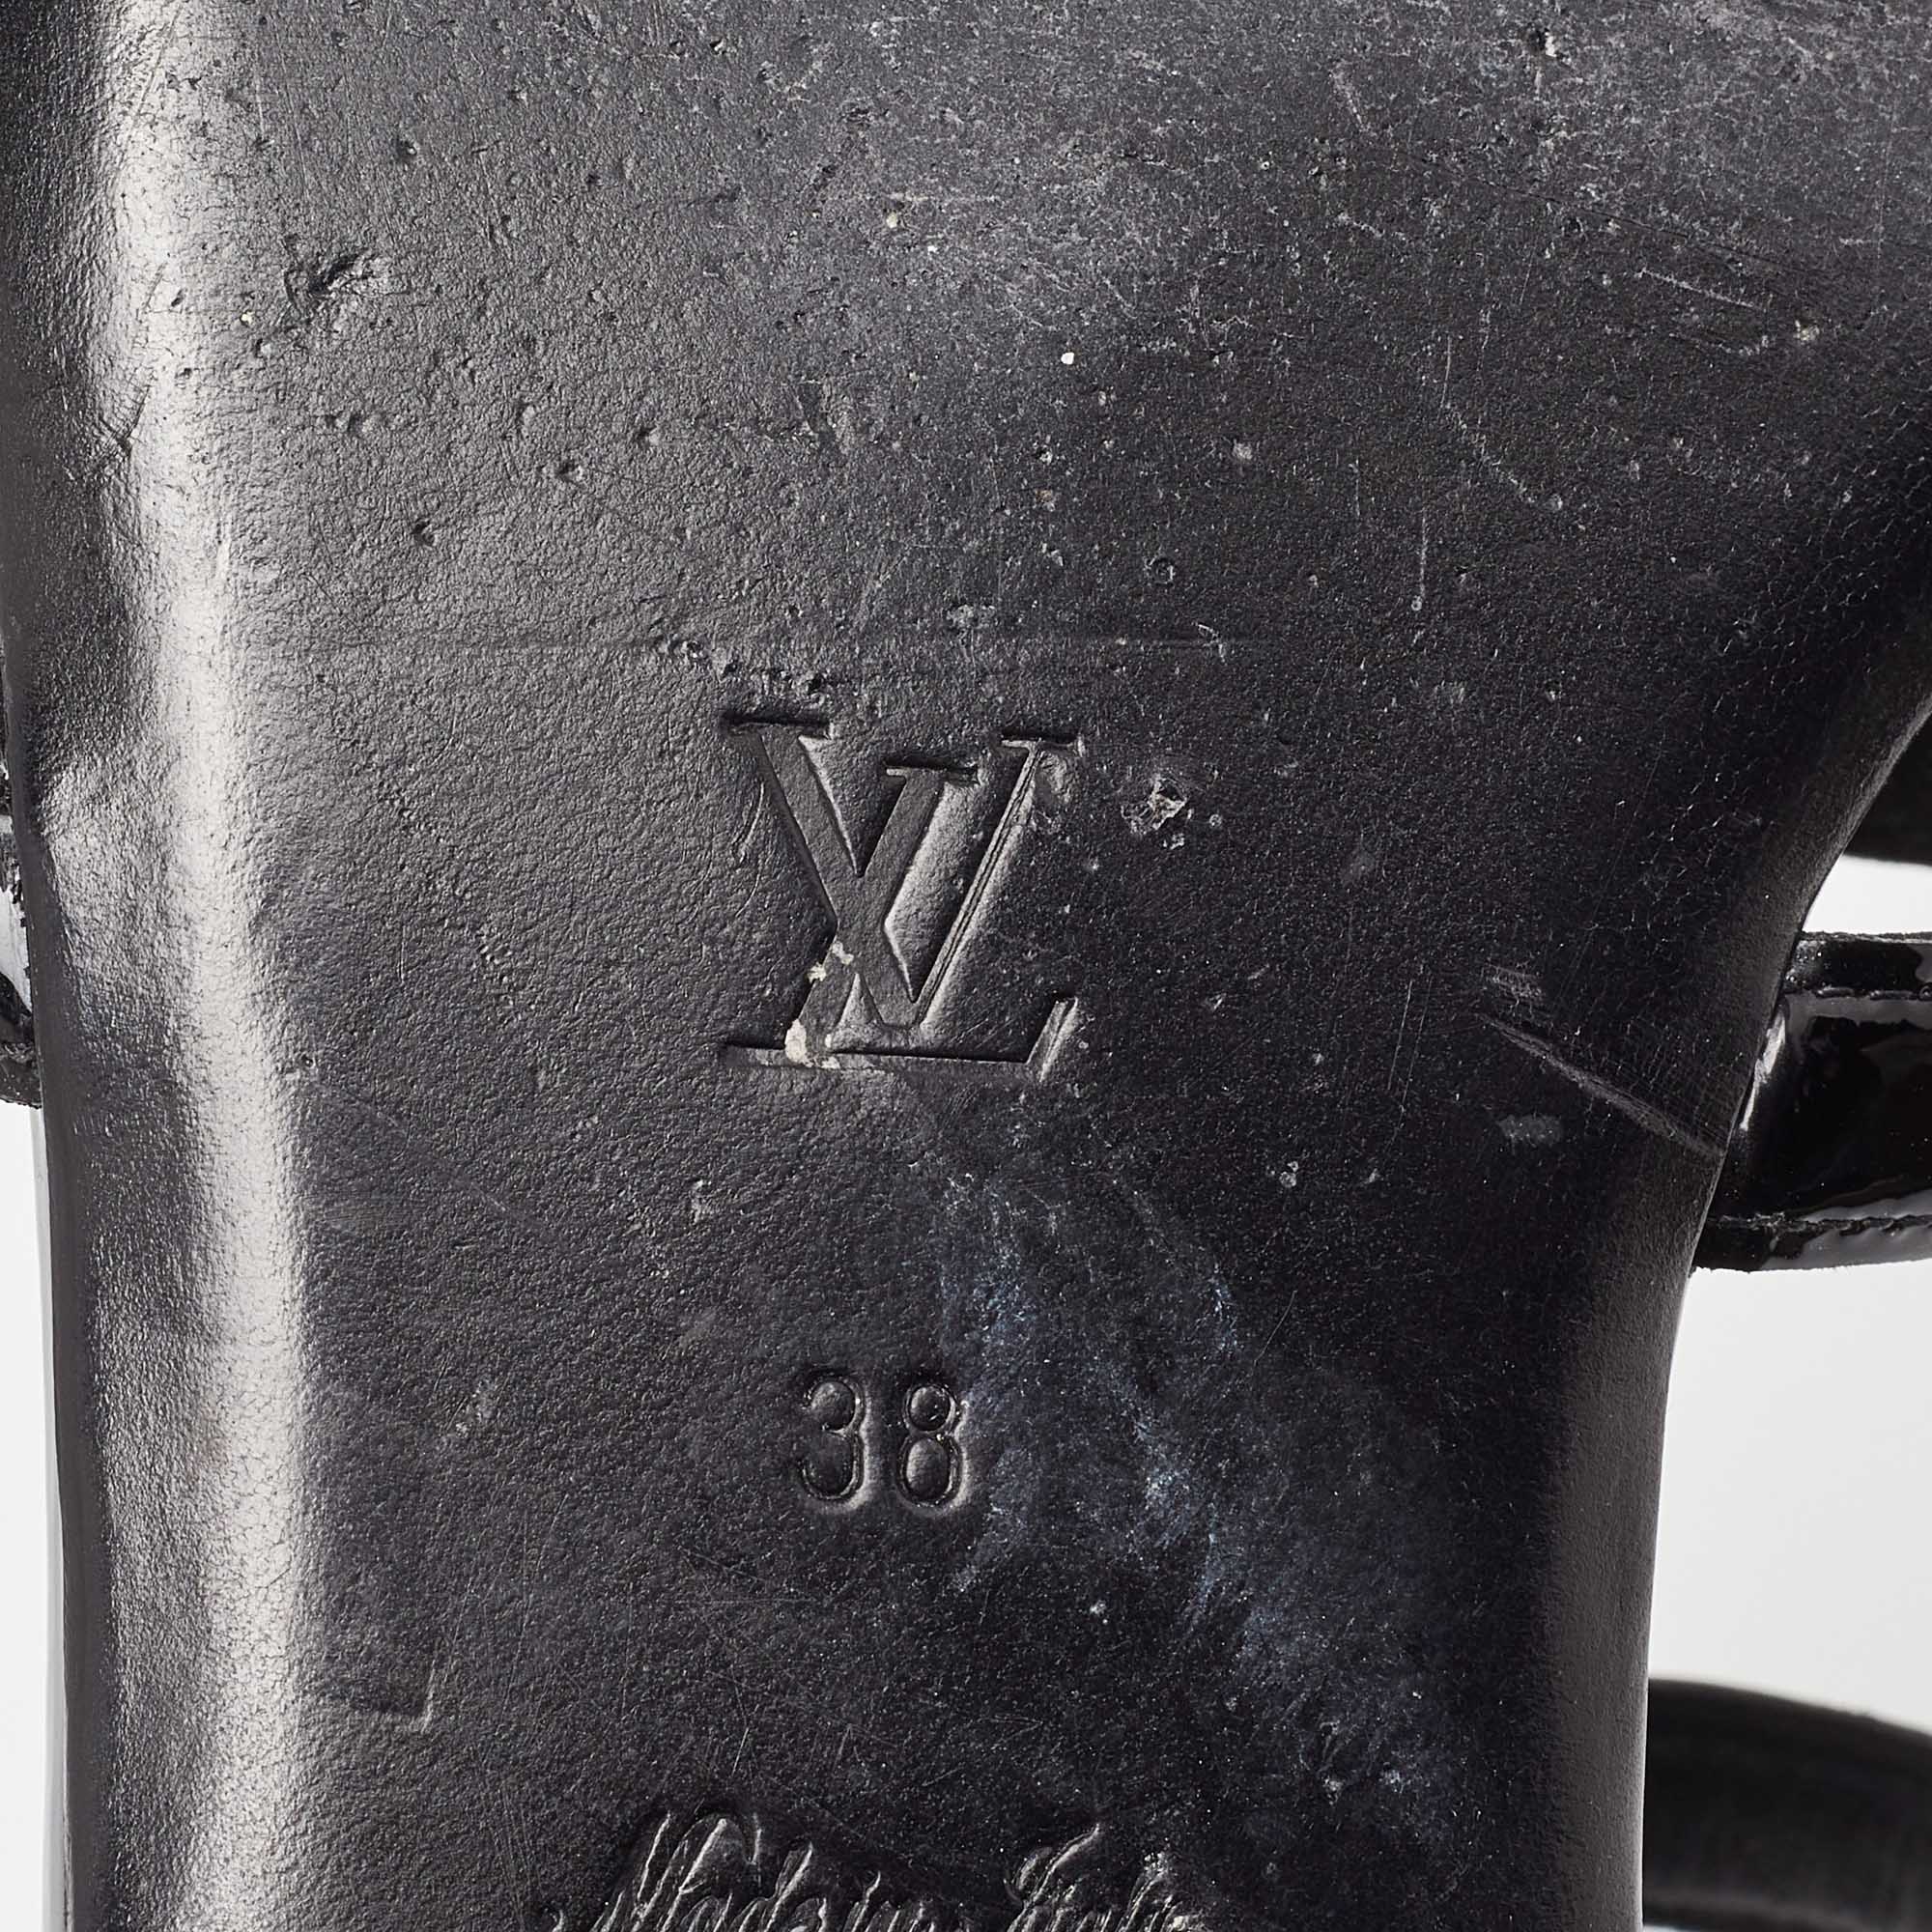 Louis Vuitton Black Patent Leather Paradiso Flat Sandals Size 38